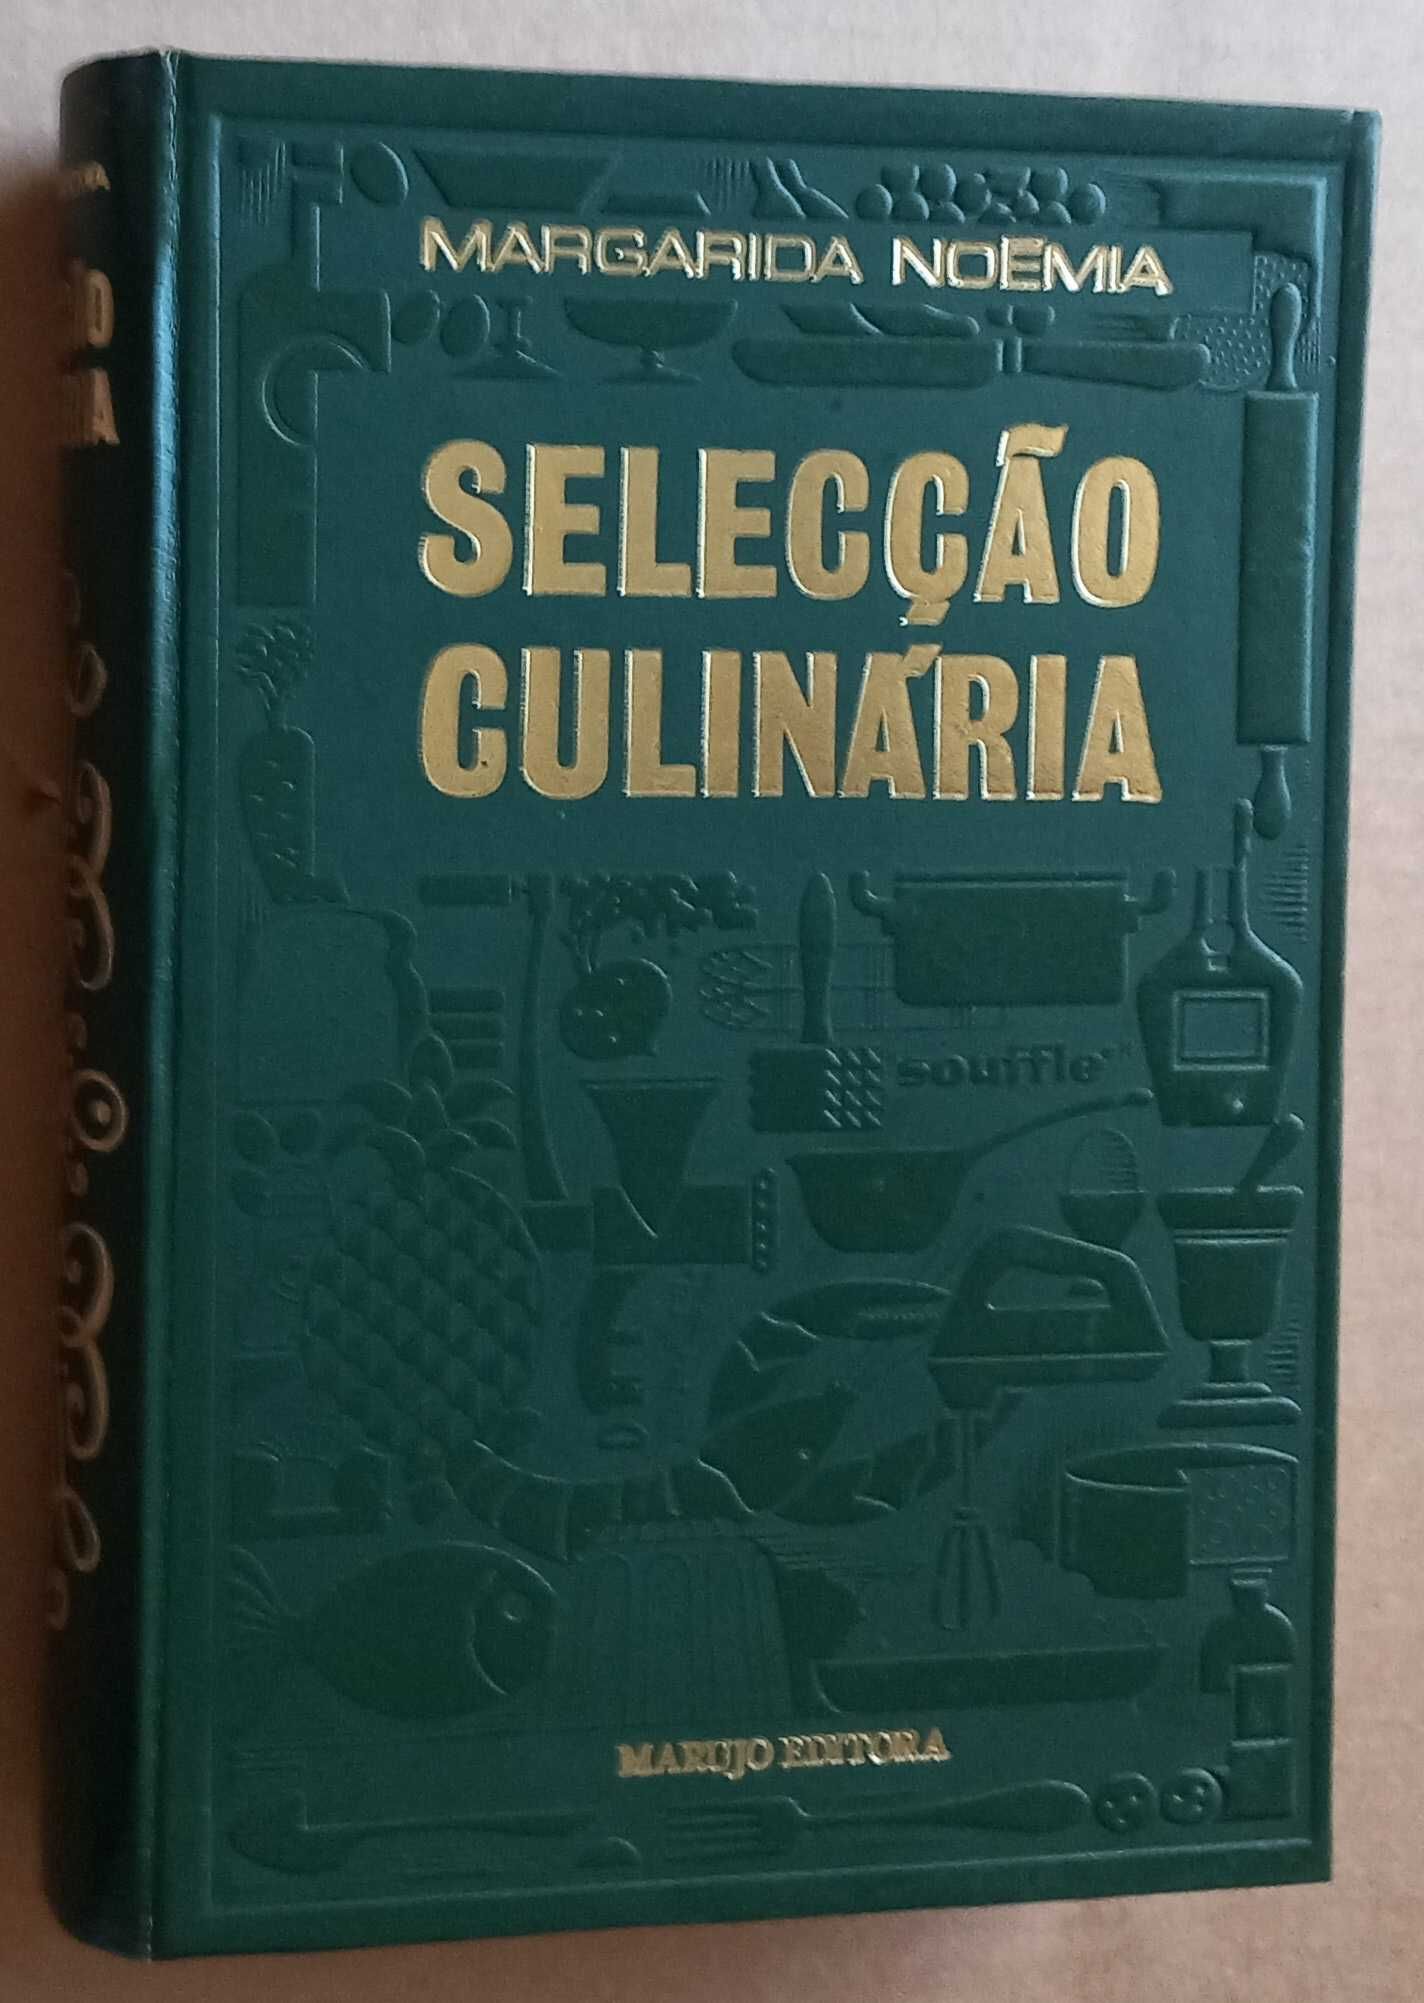 Margarida Noémia- Selecção Culinária vol. 2